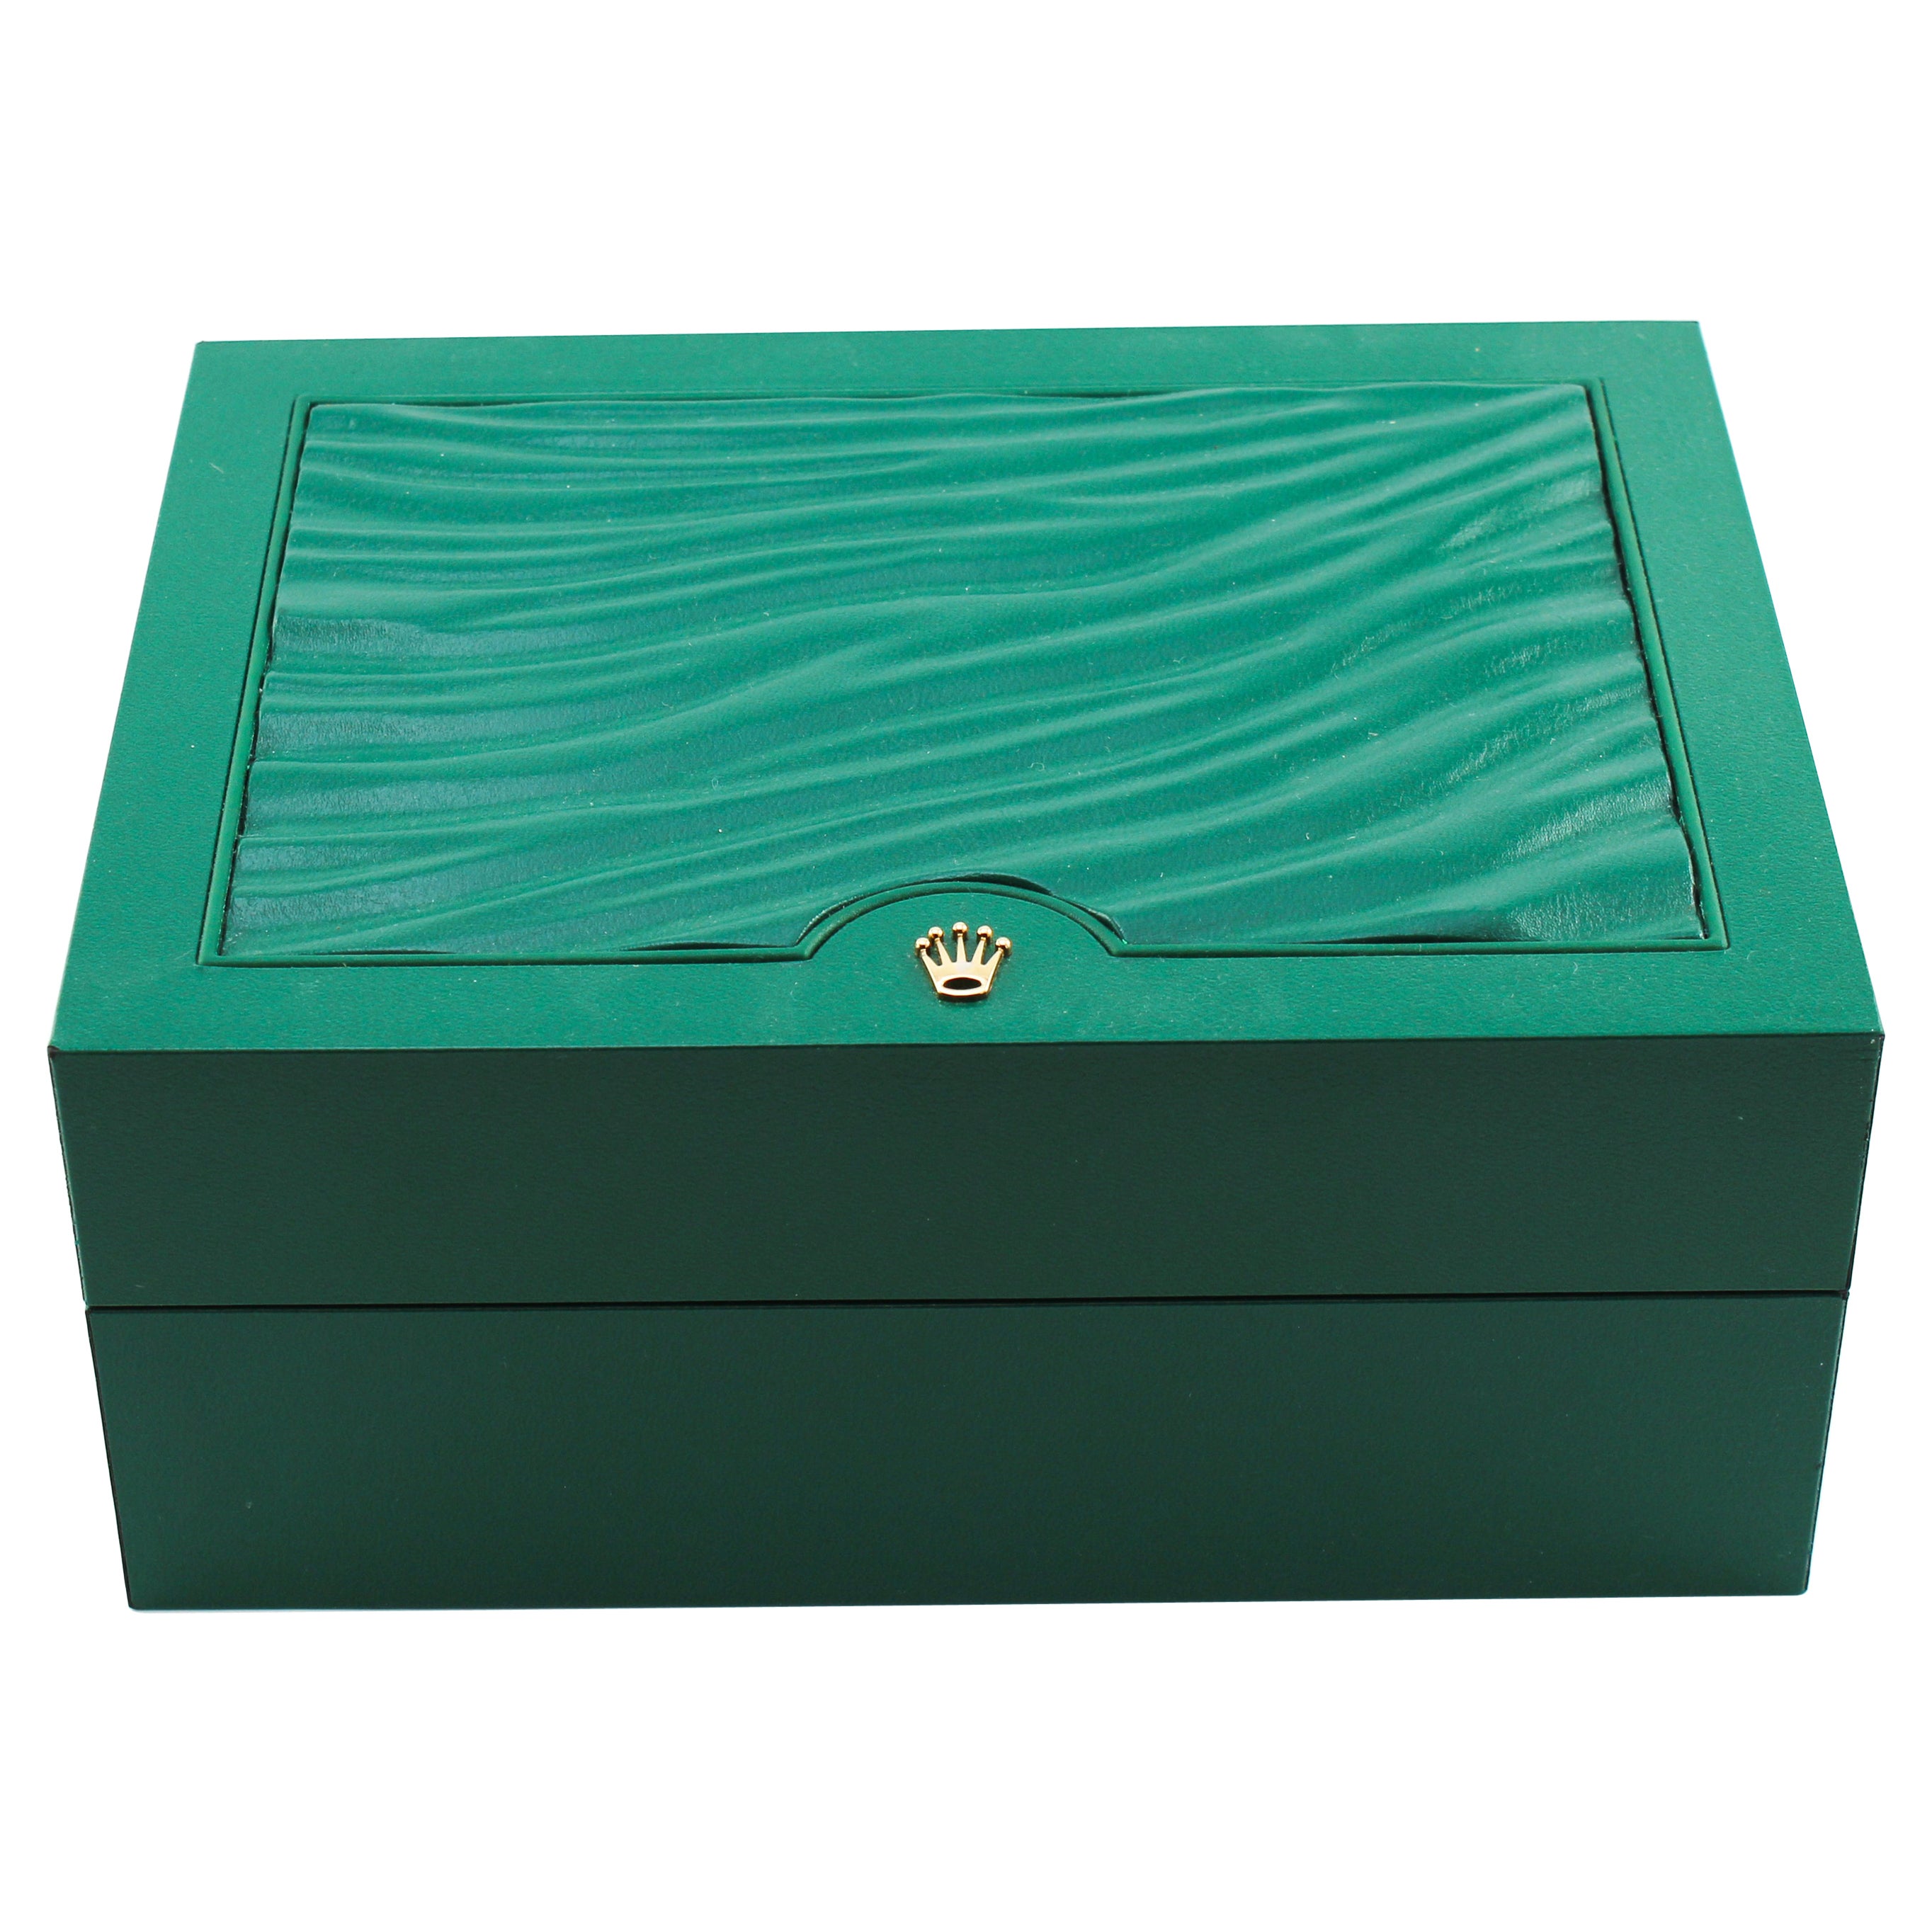 Rolex Watch Presentation Box, Box